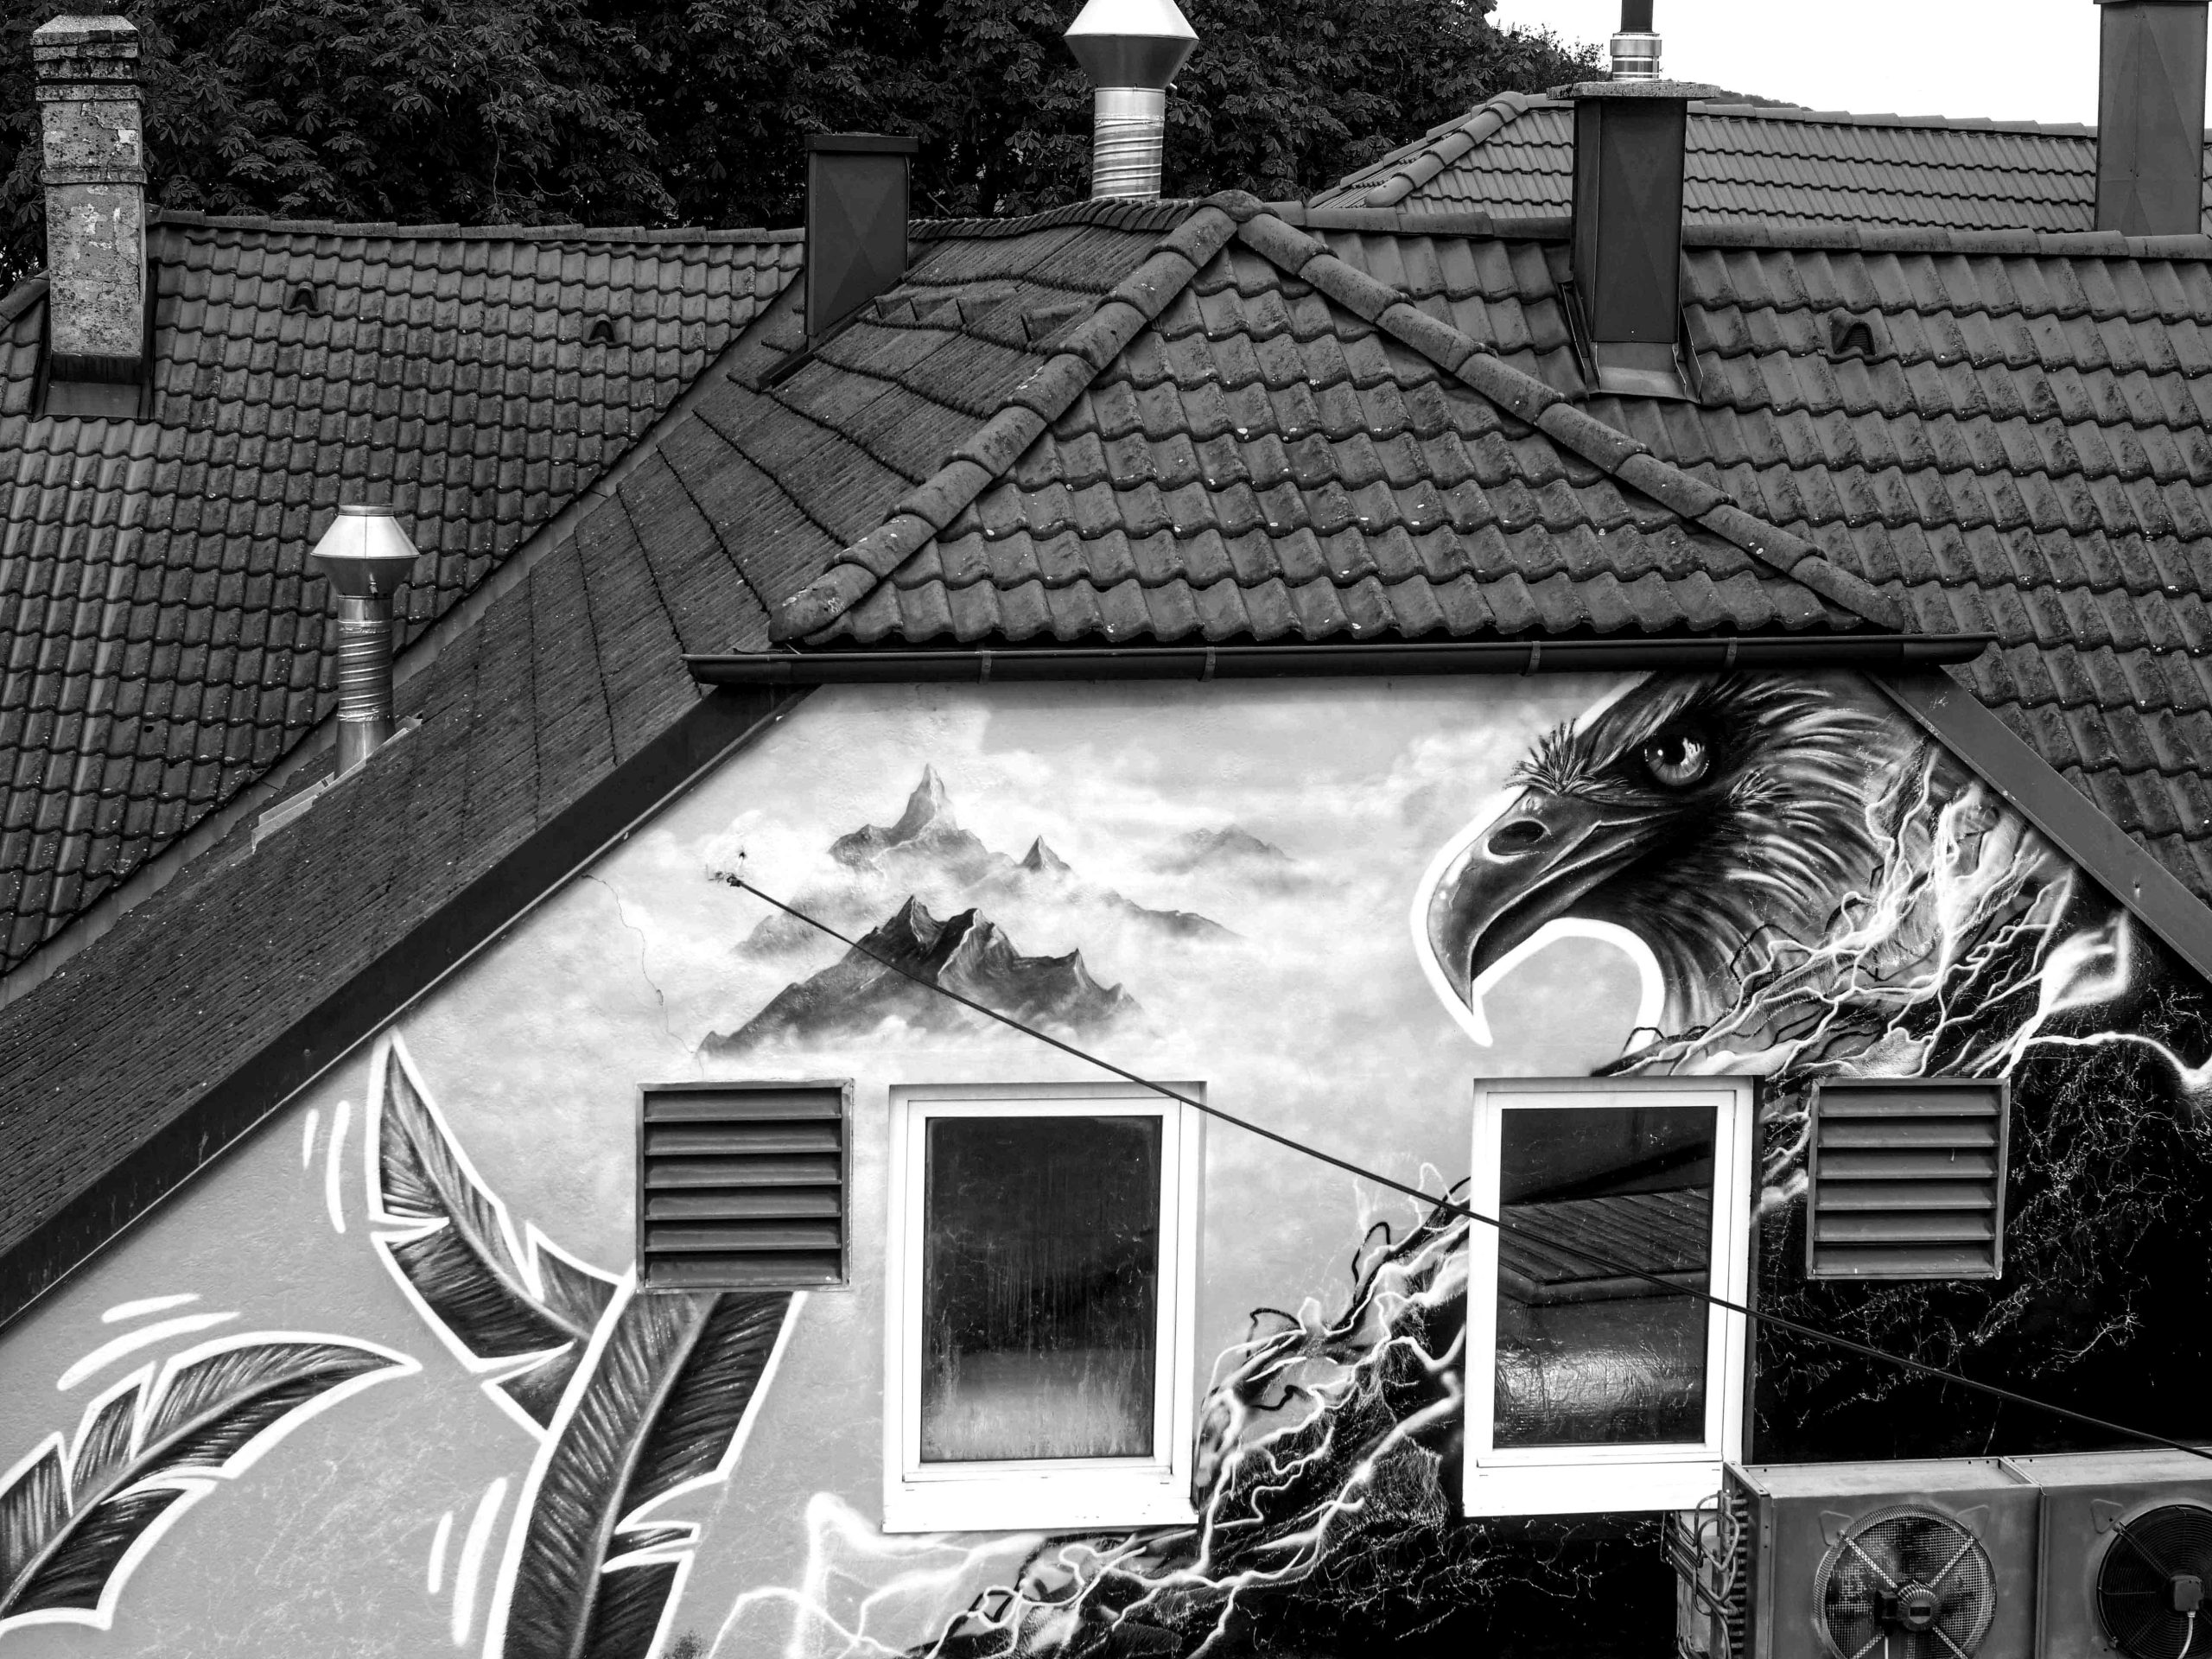 mural in niederösterreich